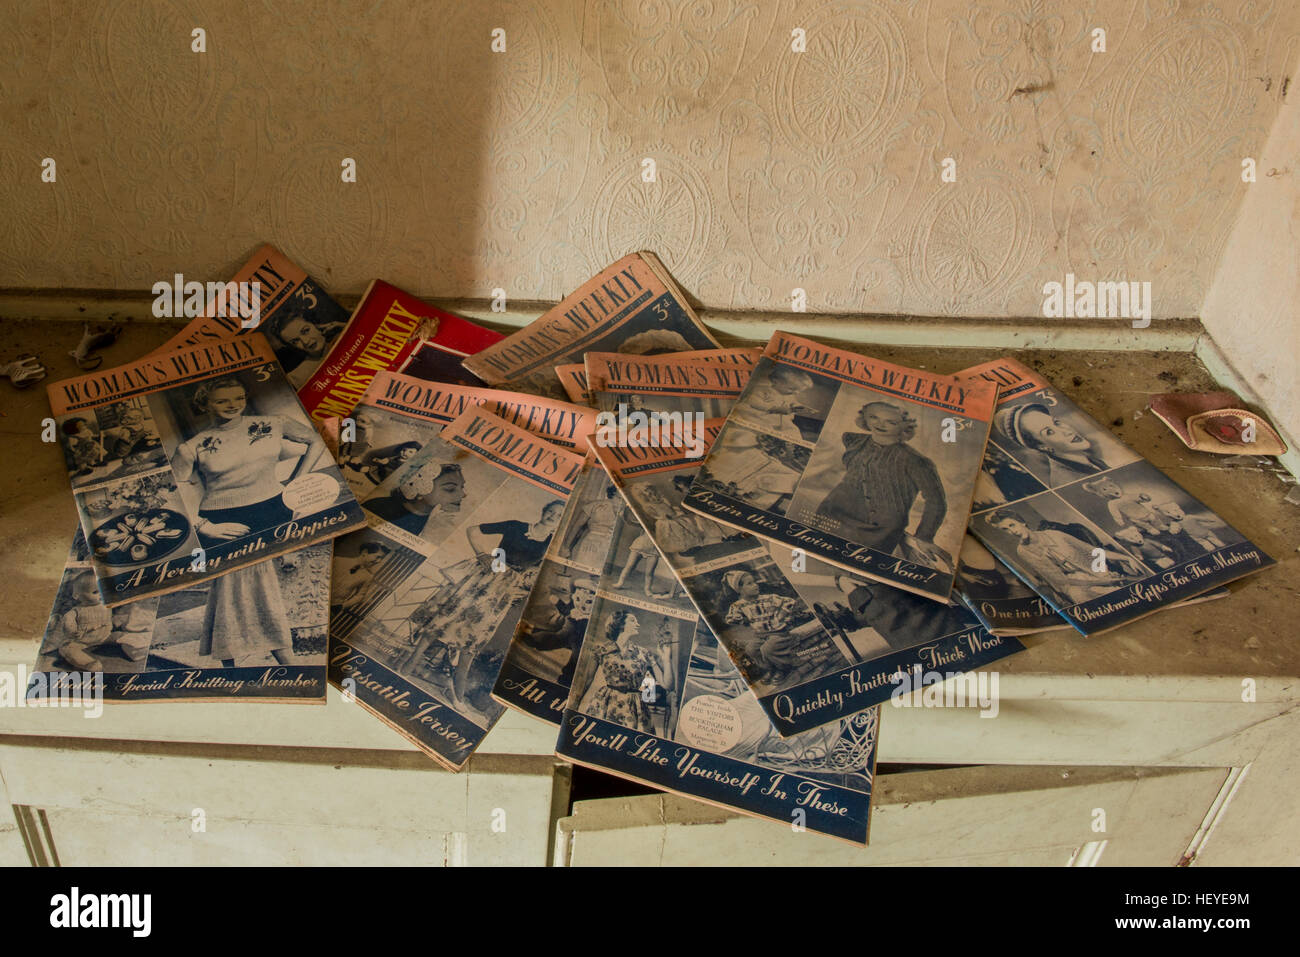 Vieux magazines hebdomadaires de womans l'intérieur d'un magasin à l'abandon ou abandonnées et des locaux d'habitation dans le village de Banham, Norfolk, UK Banque D'Images